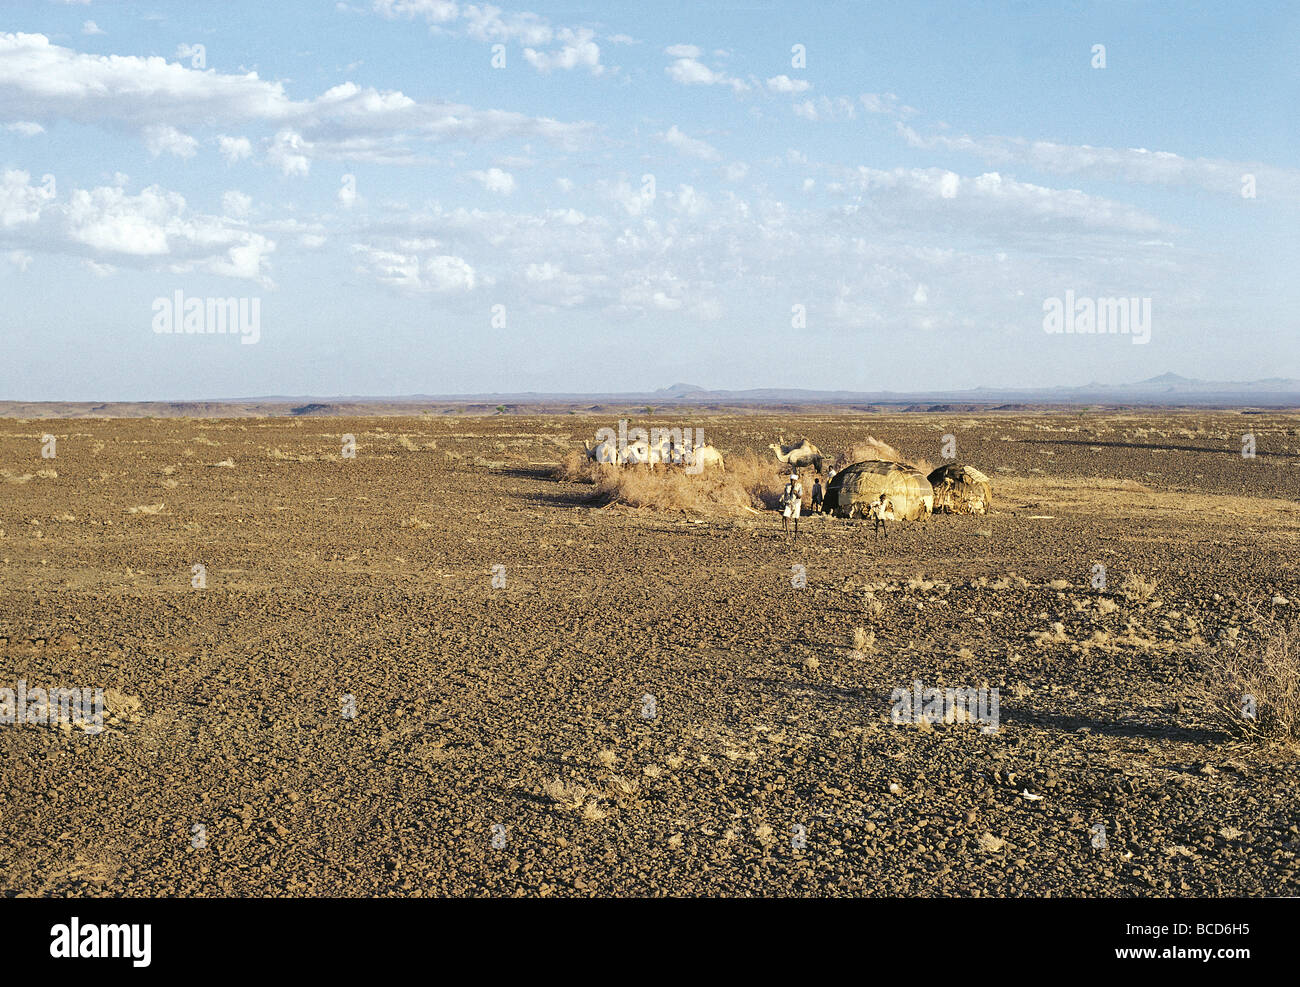 Gabbra village settlement of two houses north of Marsabit on the eastern edge of the Chalbi Desert northern Kenya East Africa Stock Photo